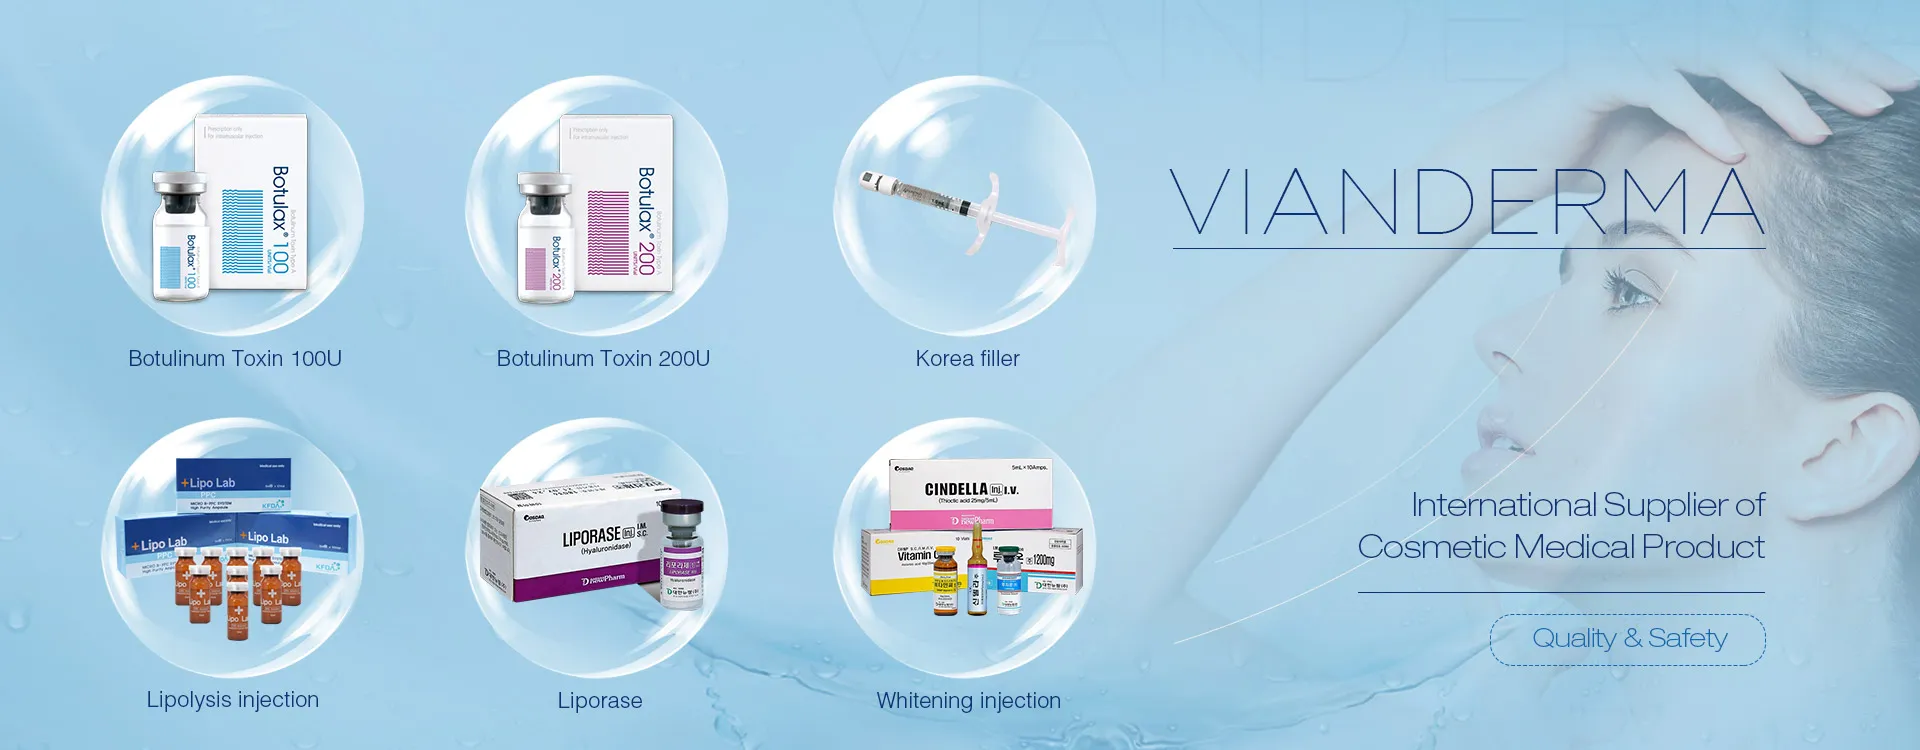 VIANDERMA - Internationaler Anbieter von kosmetischen Medizinprodukten